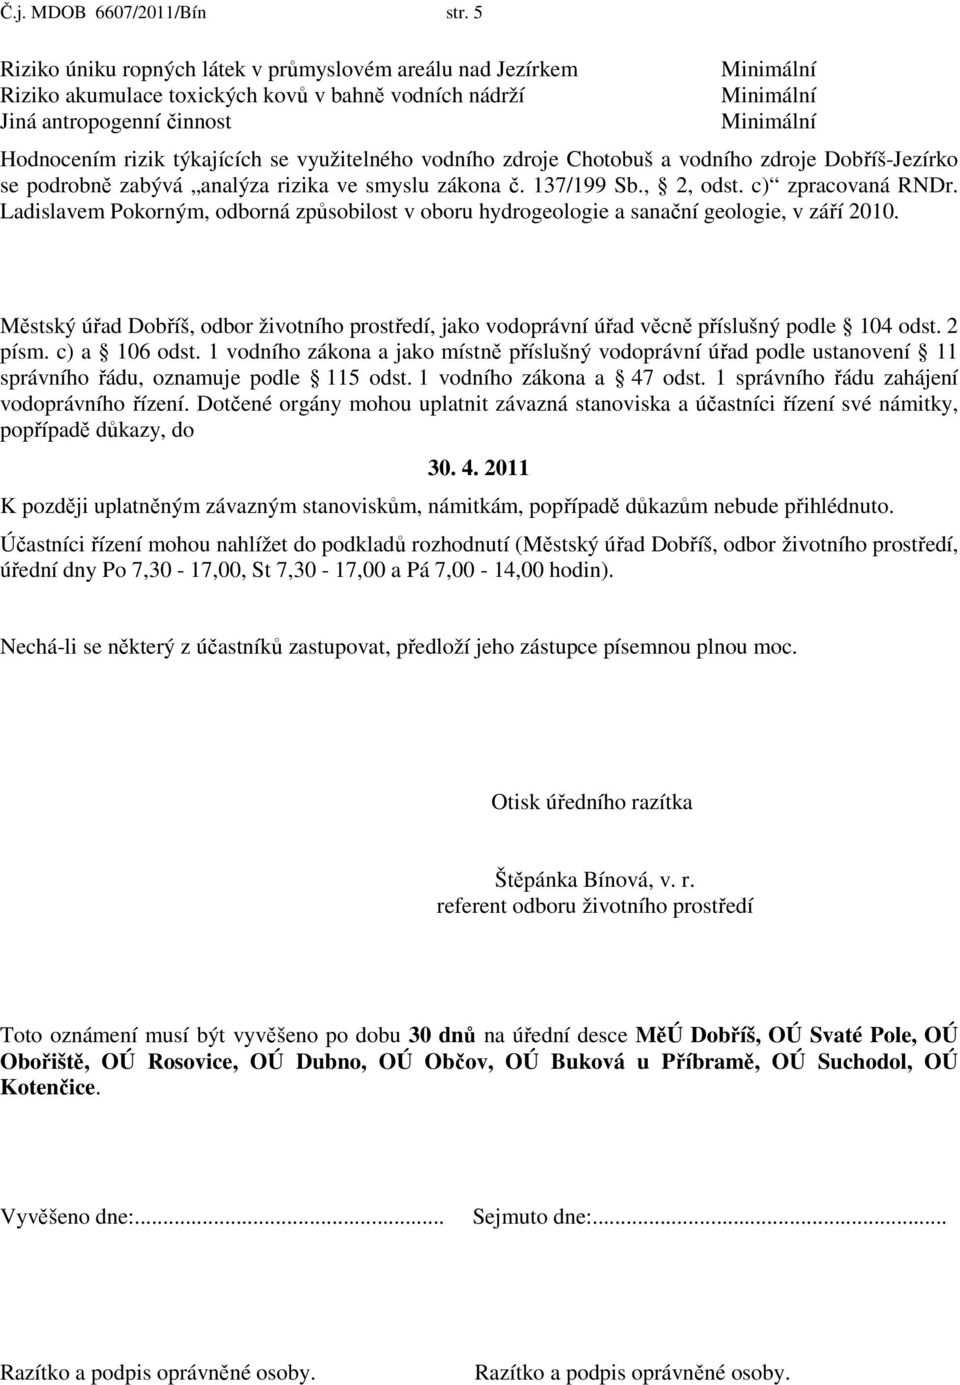 zdroje Chotobuš a vodního zdroje Dobříš-Jezírko se podrobně zabývá analýza rizika ve smyslu zákona č. 137/199 Sb., 2, odst. c) zpracovaná RNDr.